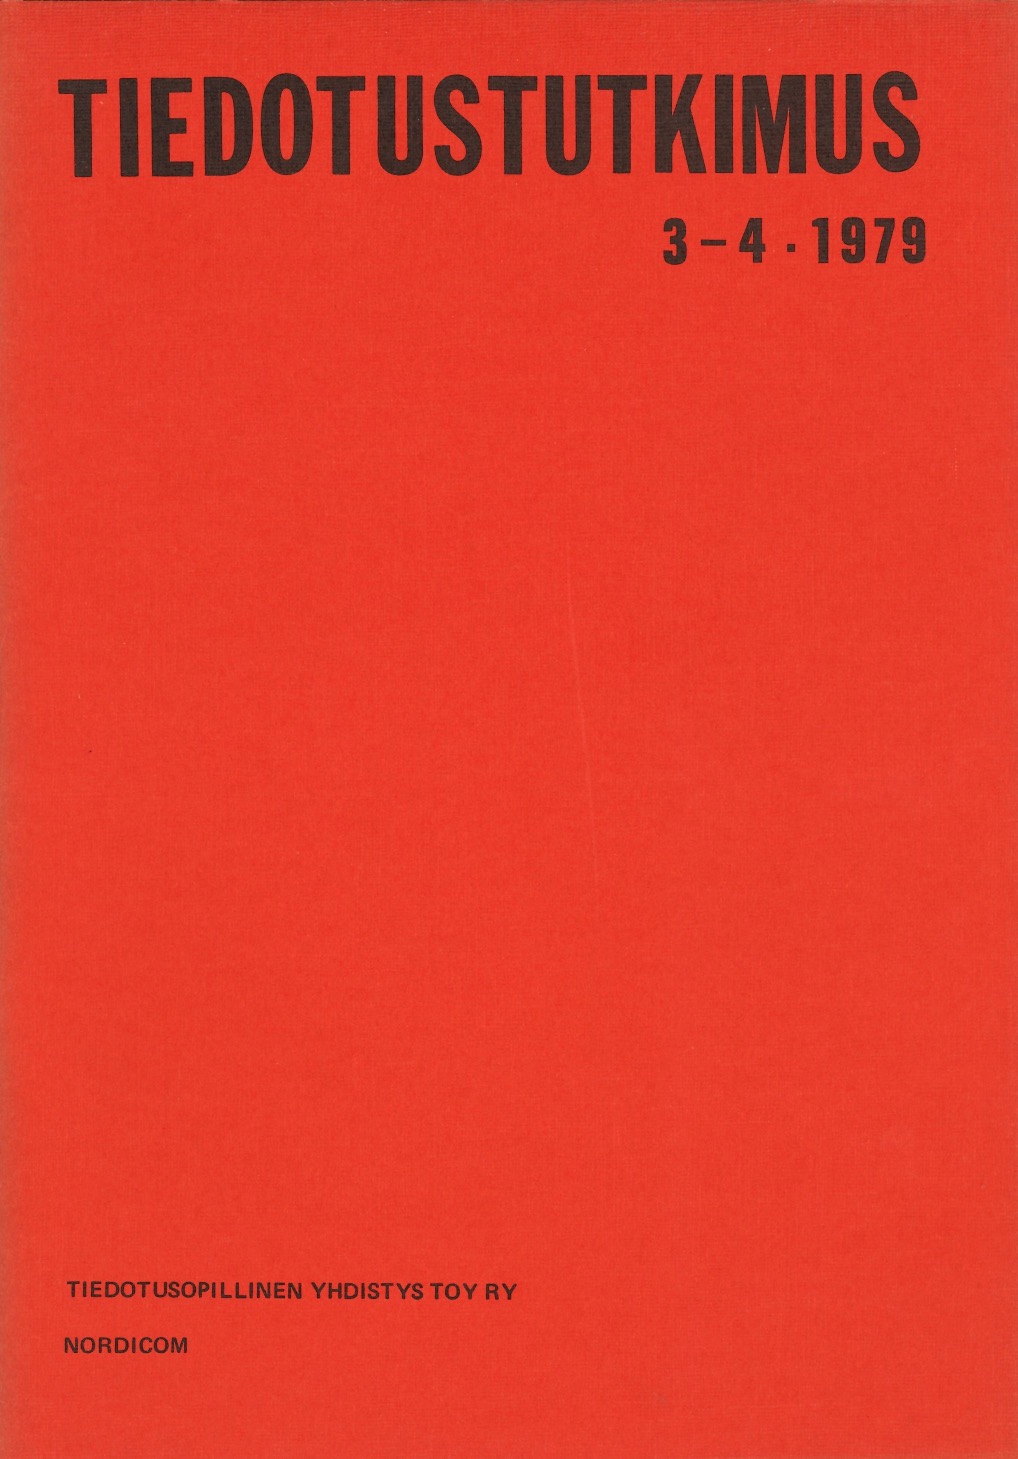 					Näytä Vol 2 Nro 3-4 (1979)
				